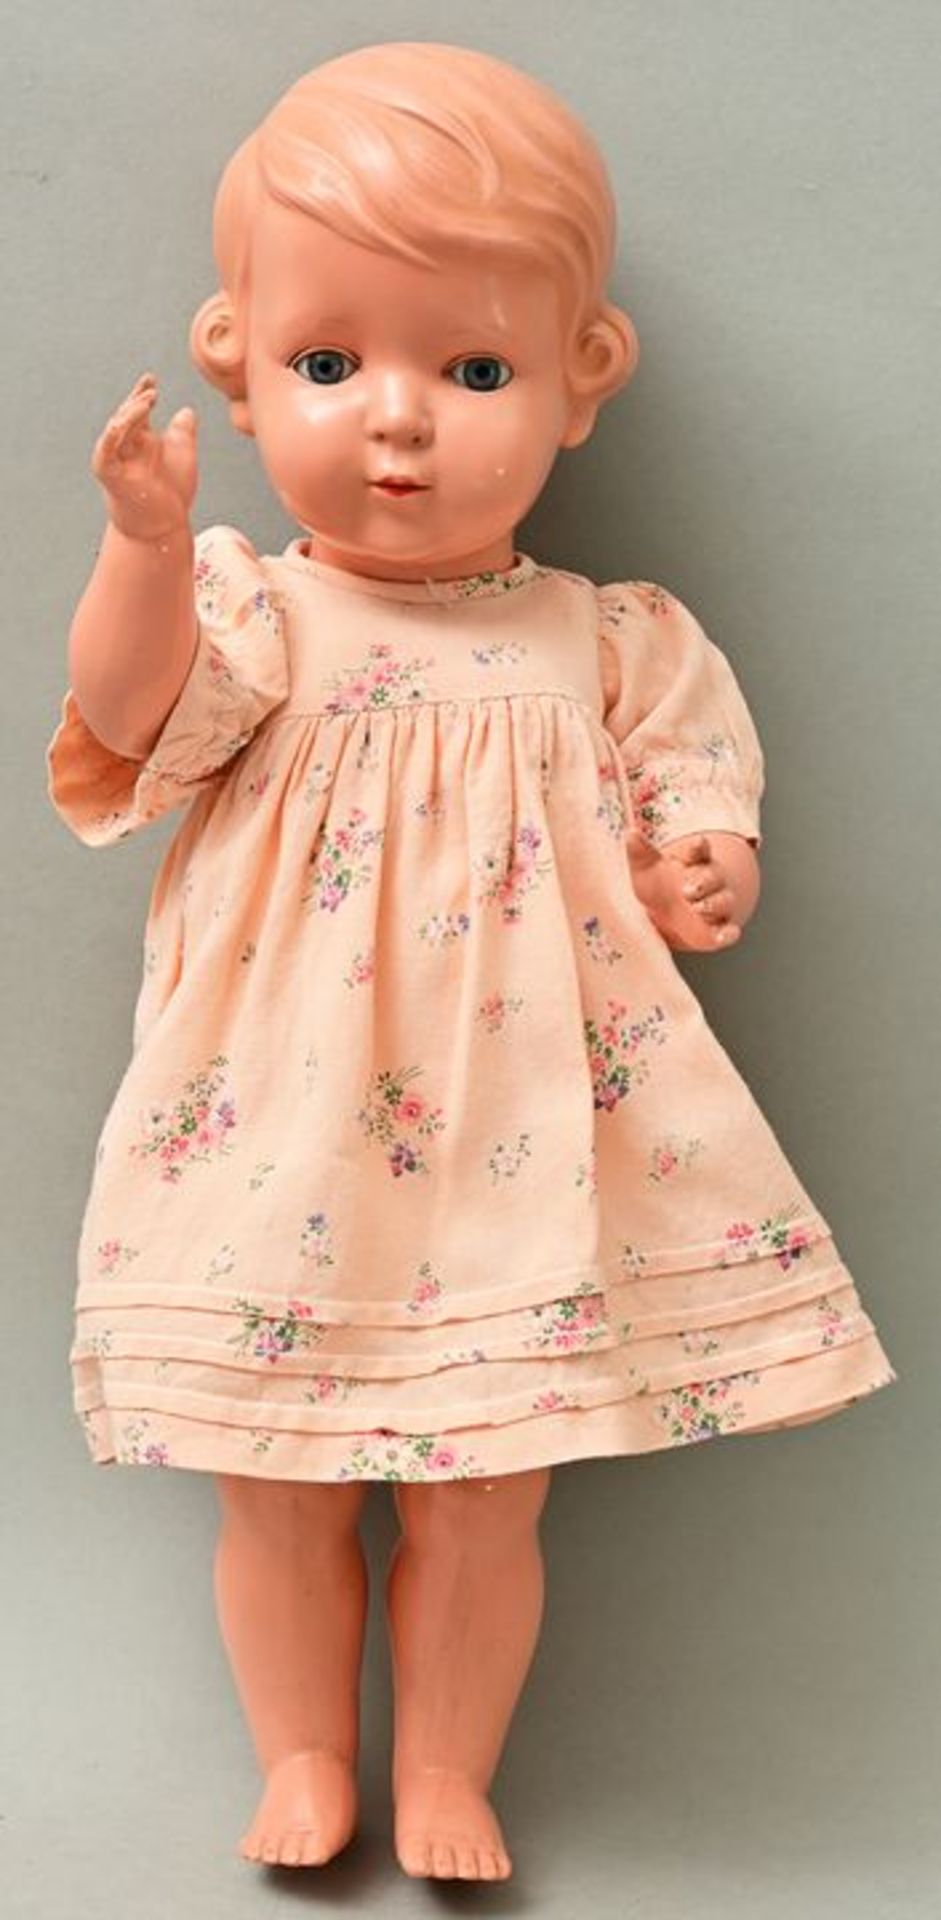 Schildkröt-Puppe Inge/ celluloid doll